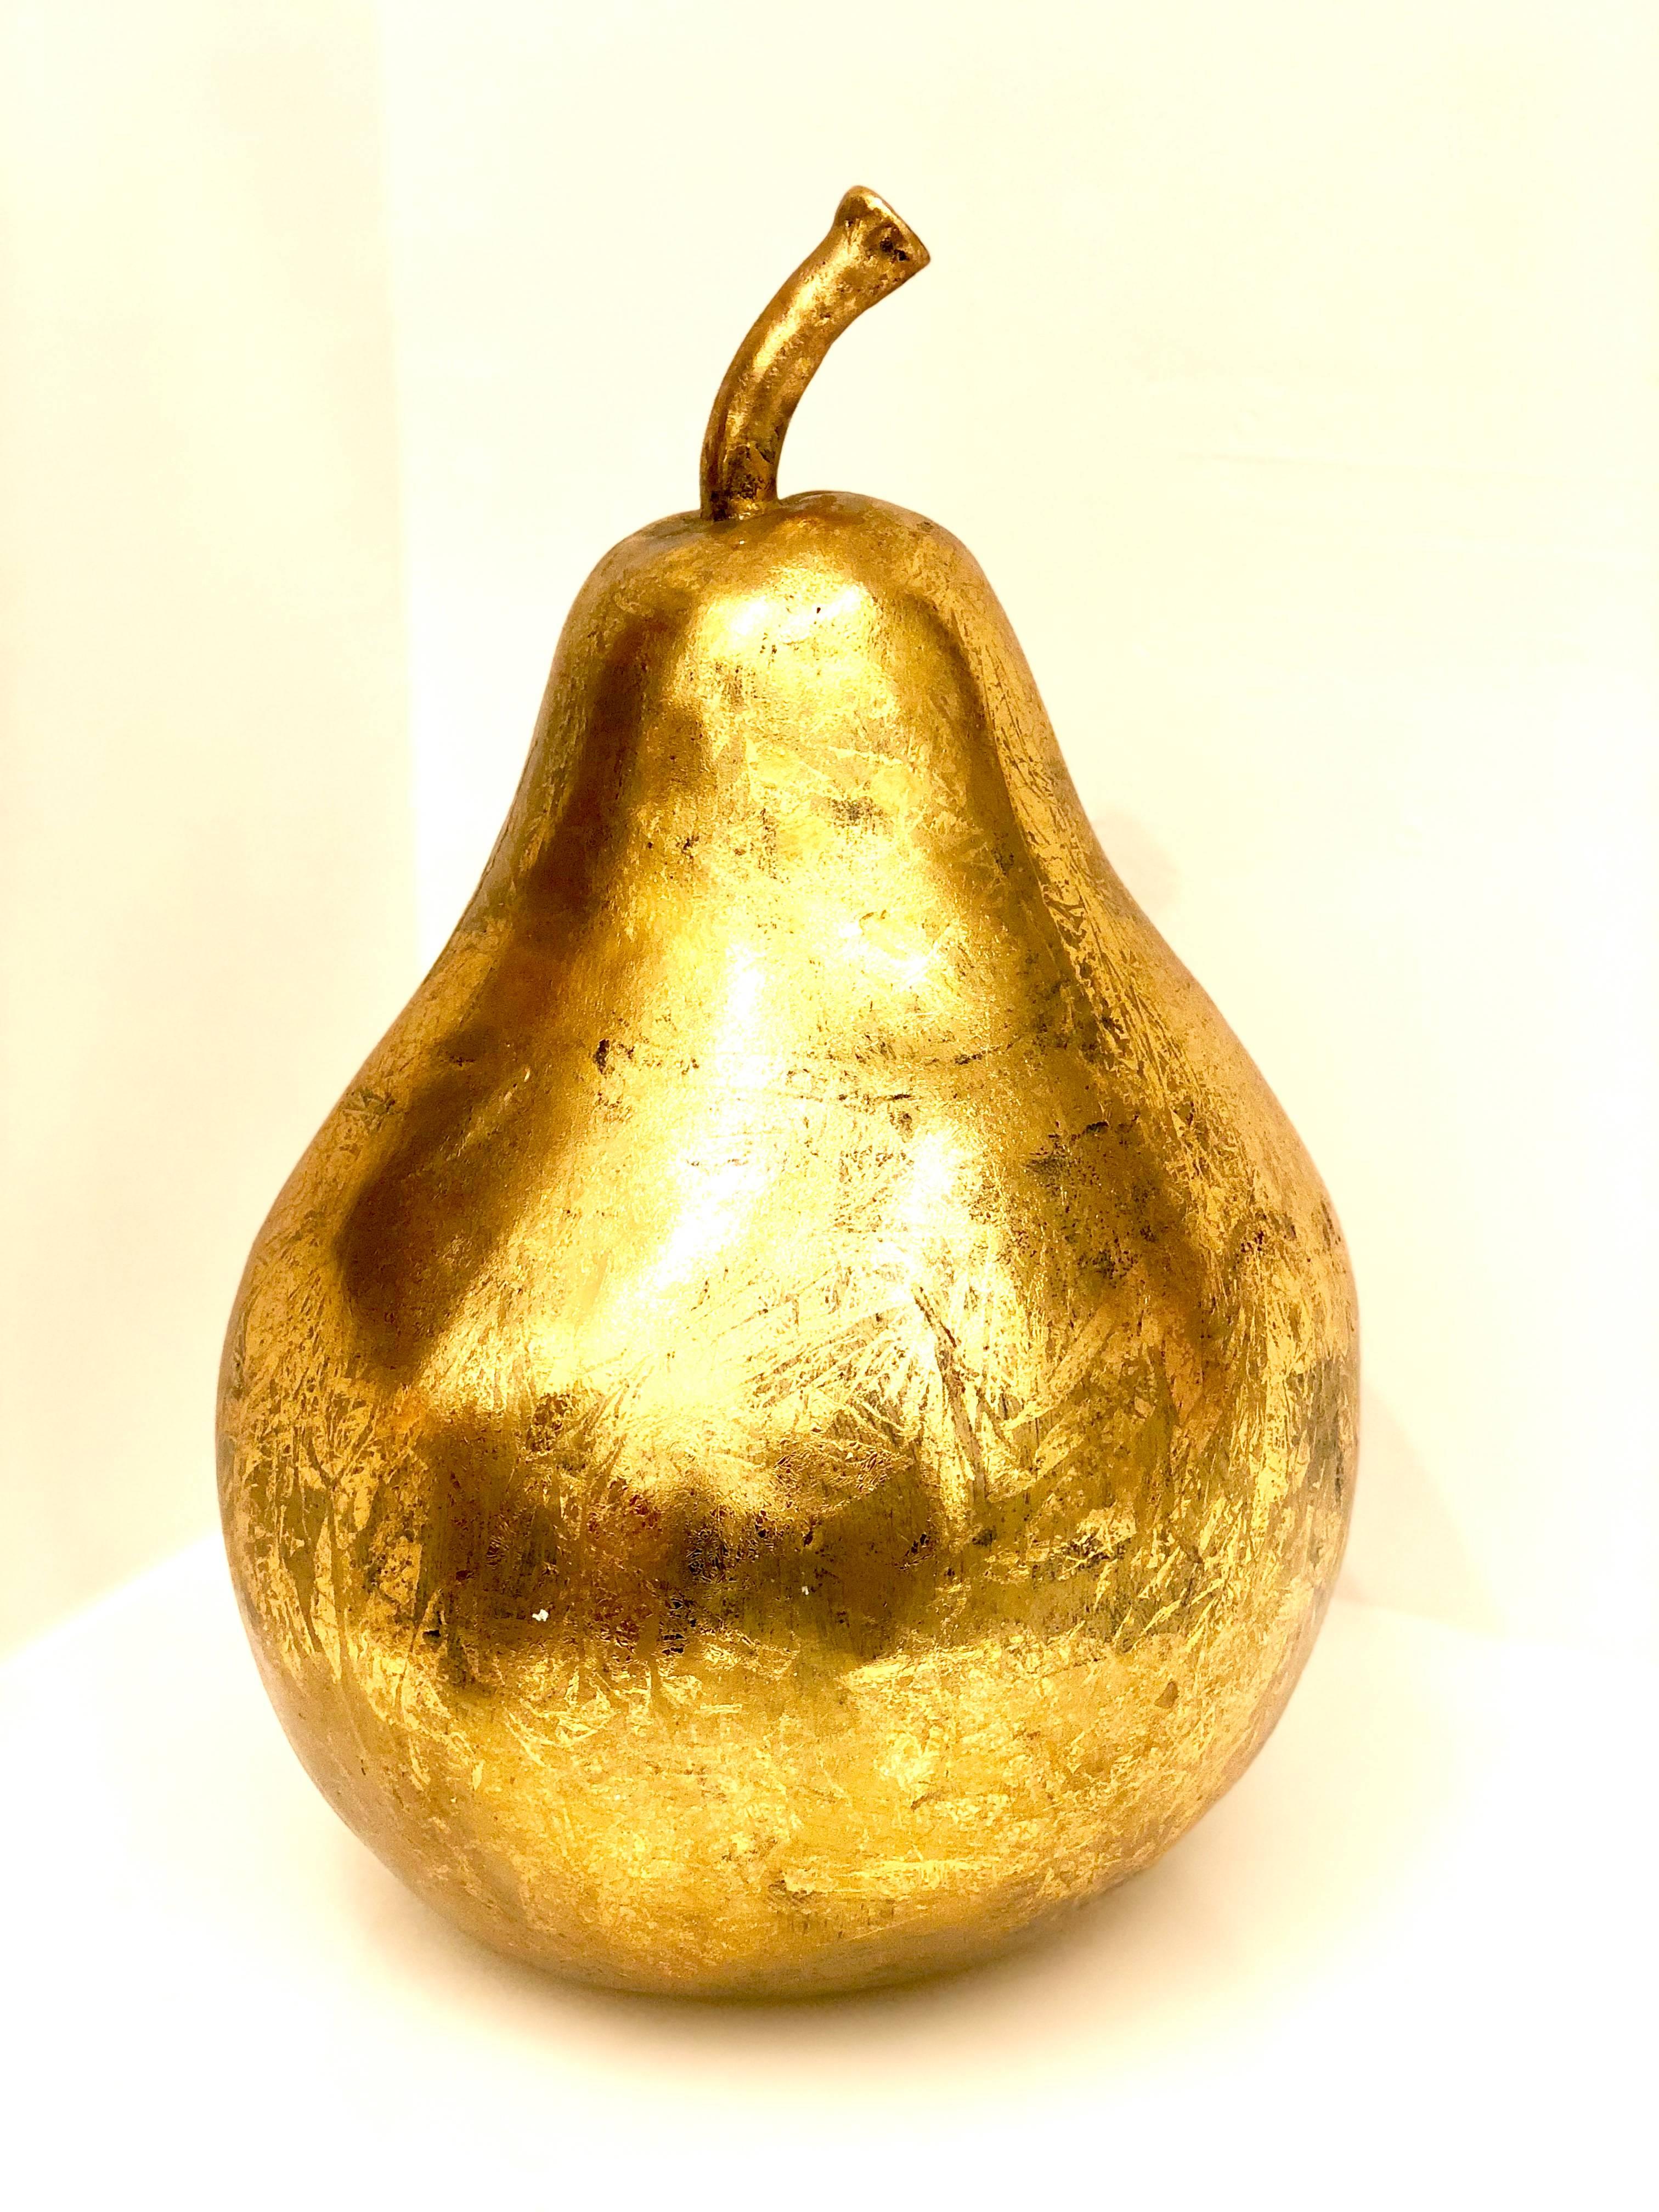 Post-Modern One of Kind Gigantic Gold Leaf Decorative Pear Sculpture